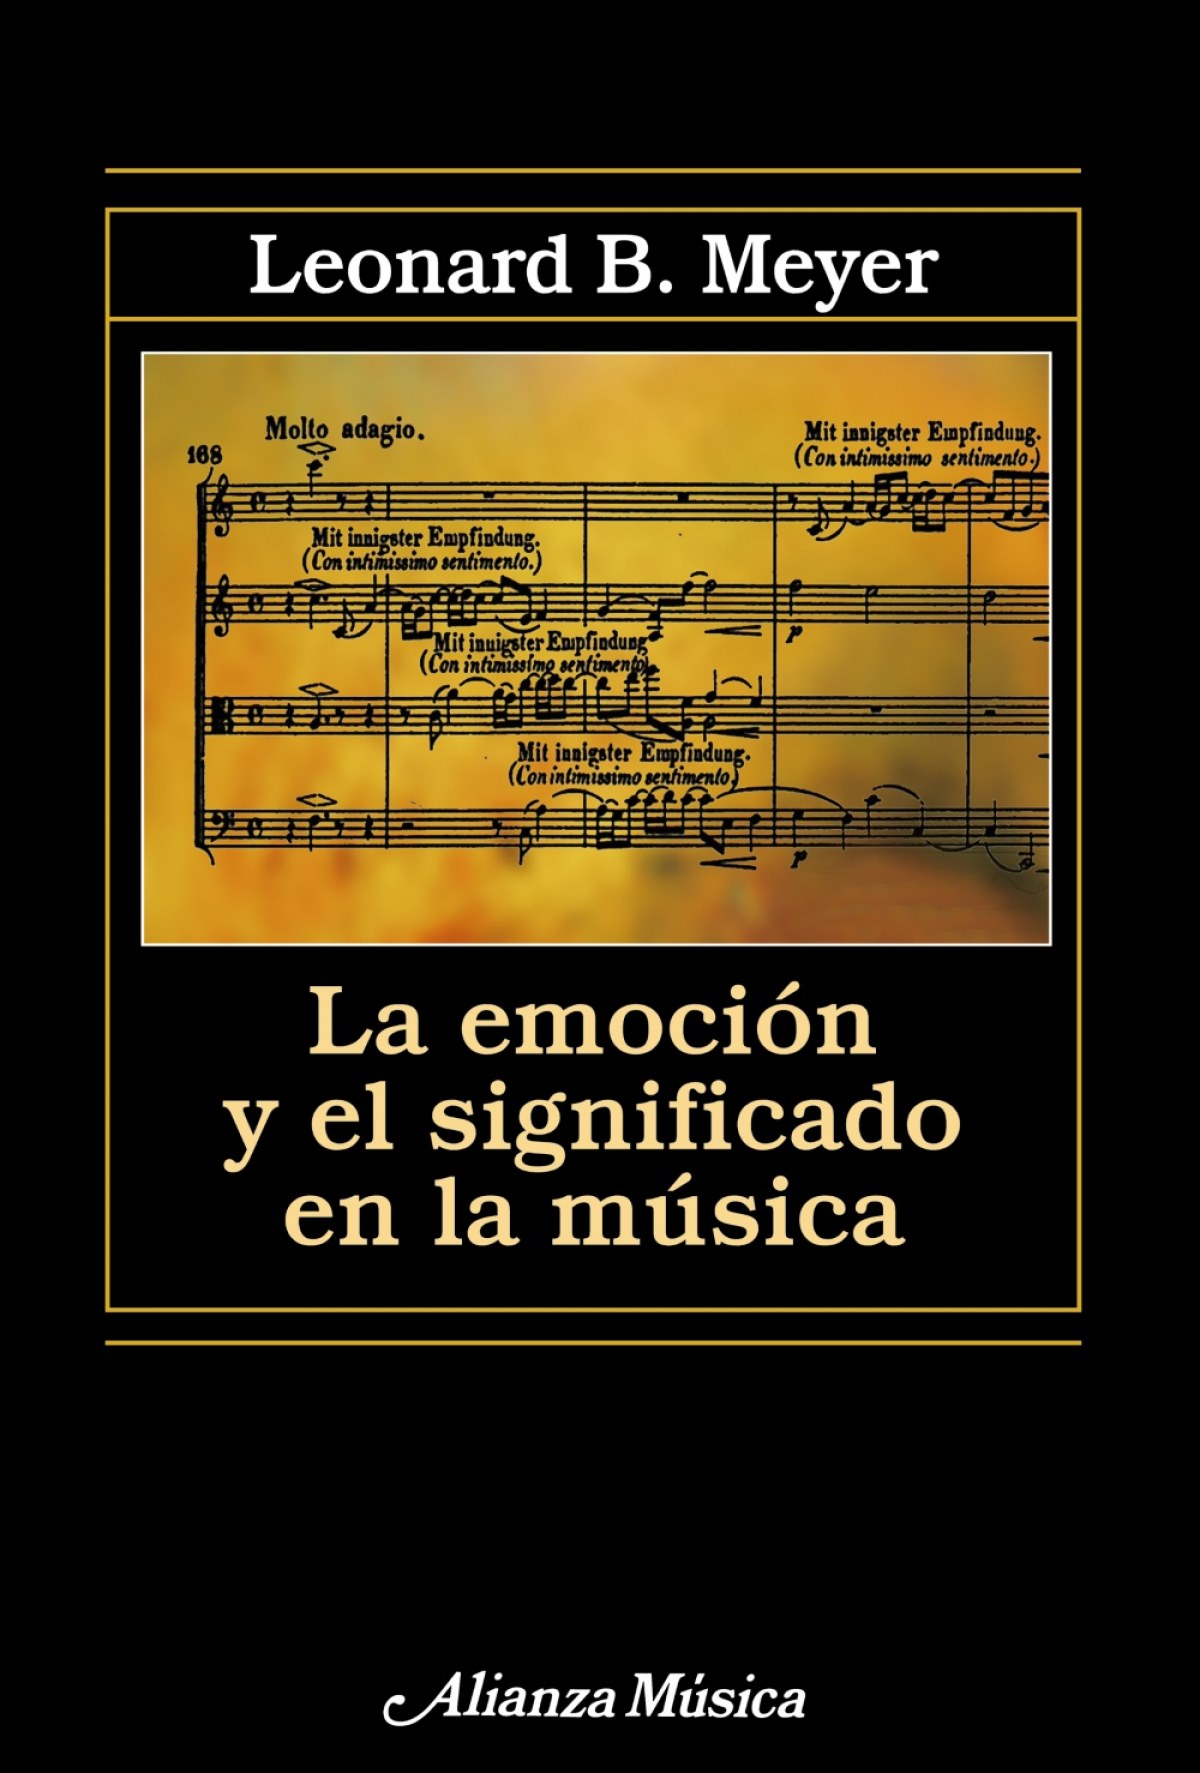 Emocion y significado musica - Meyer, Leonard